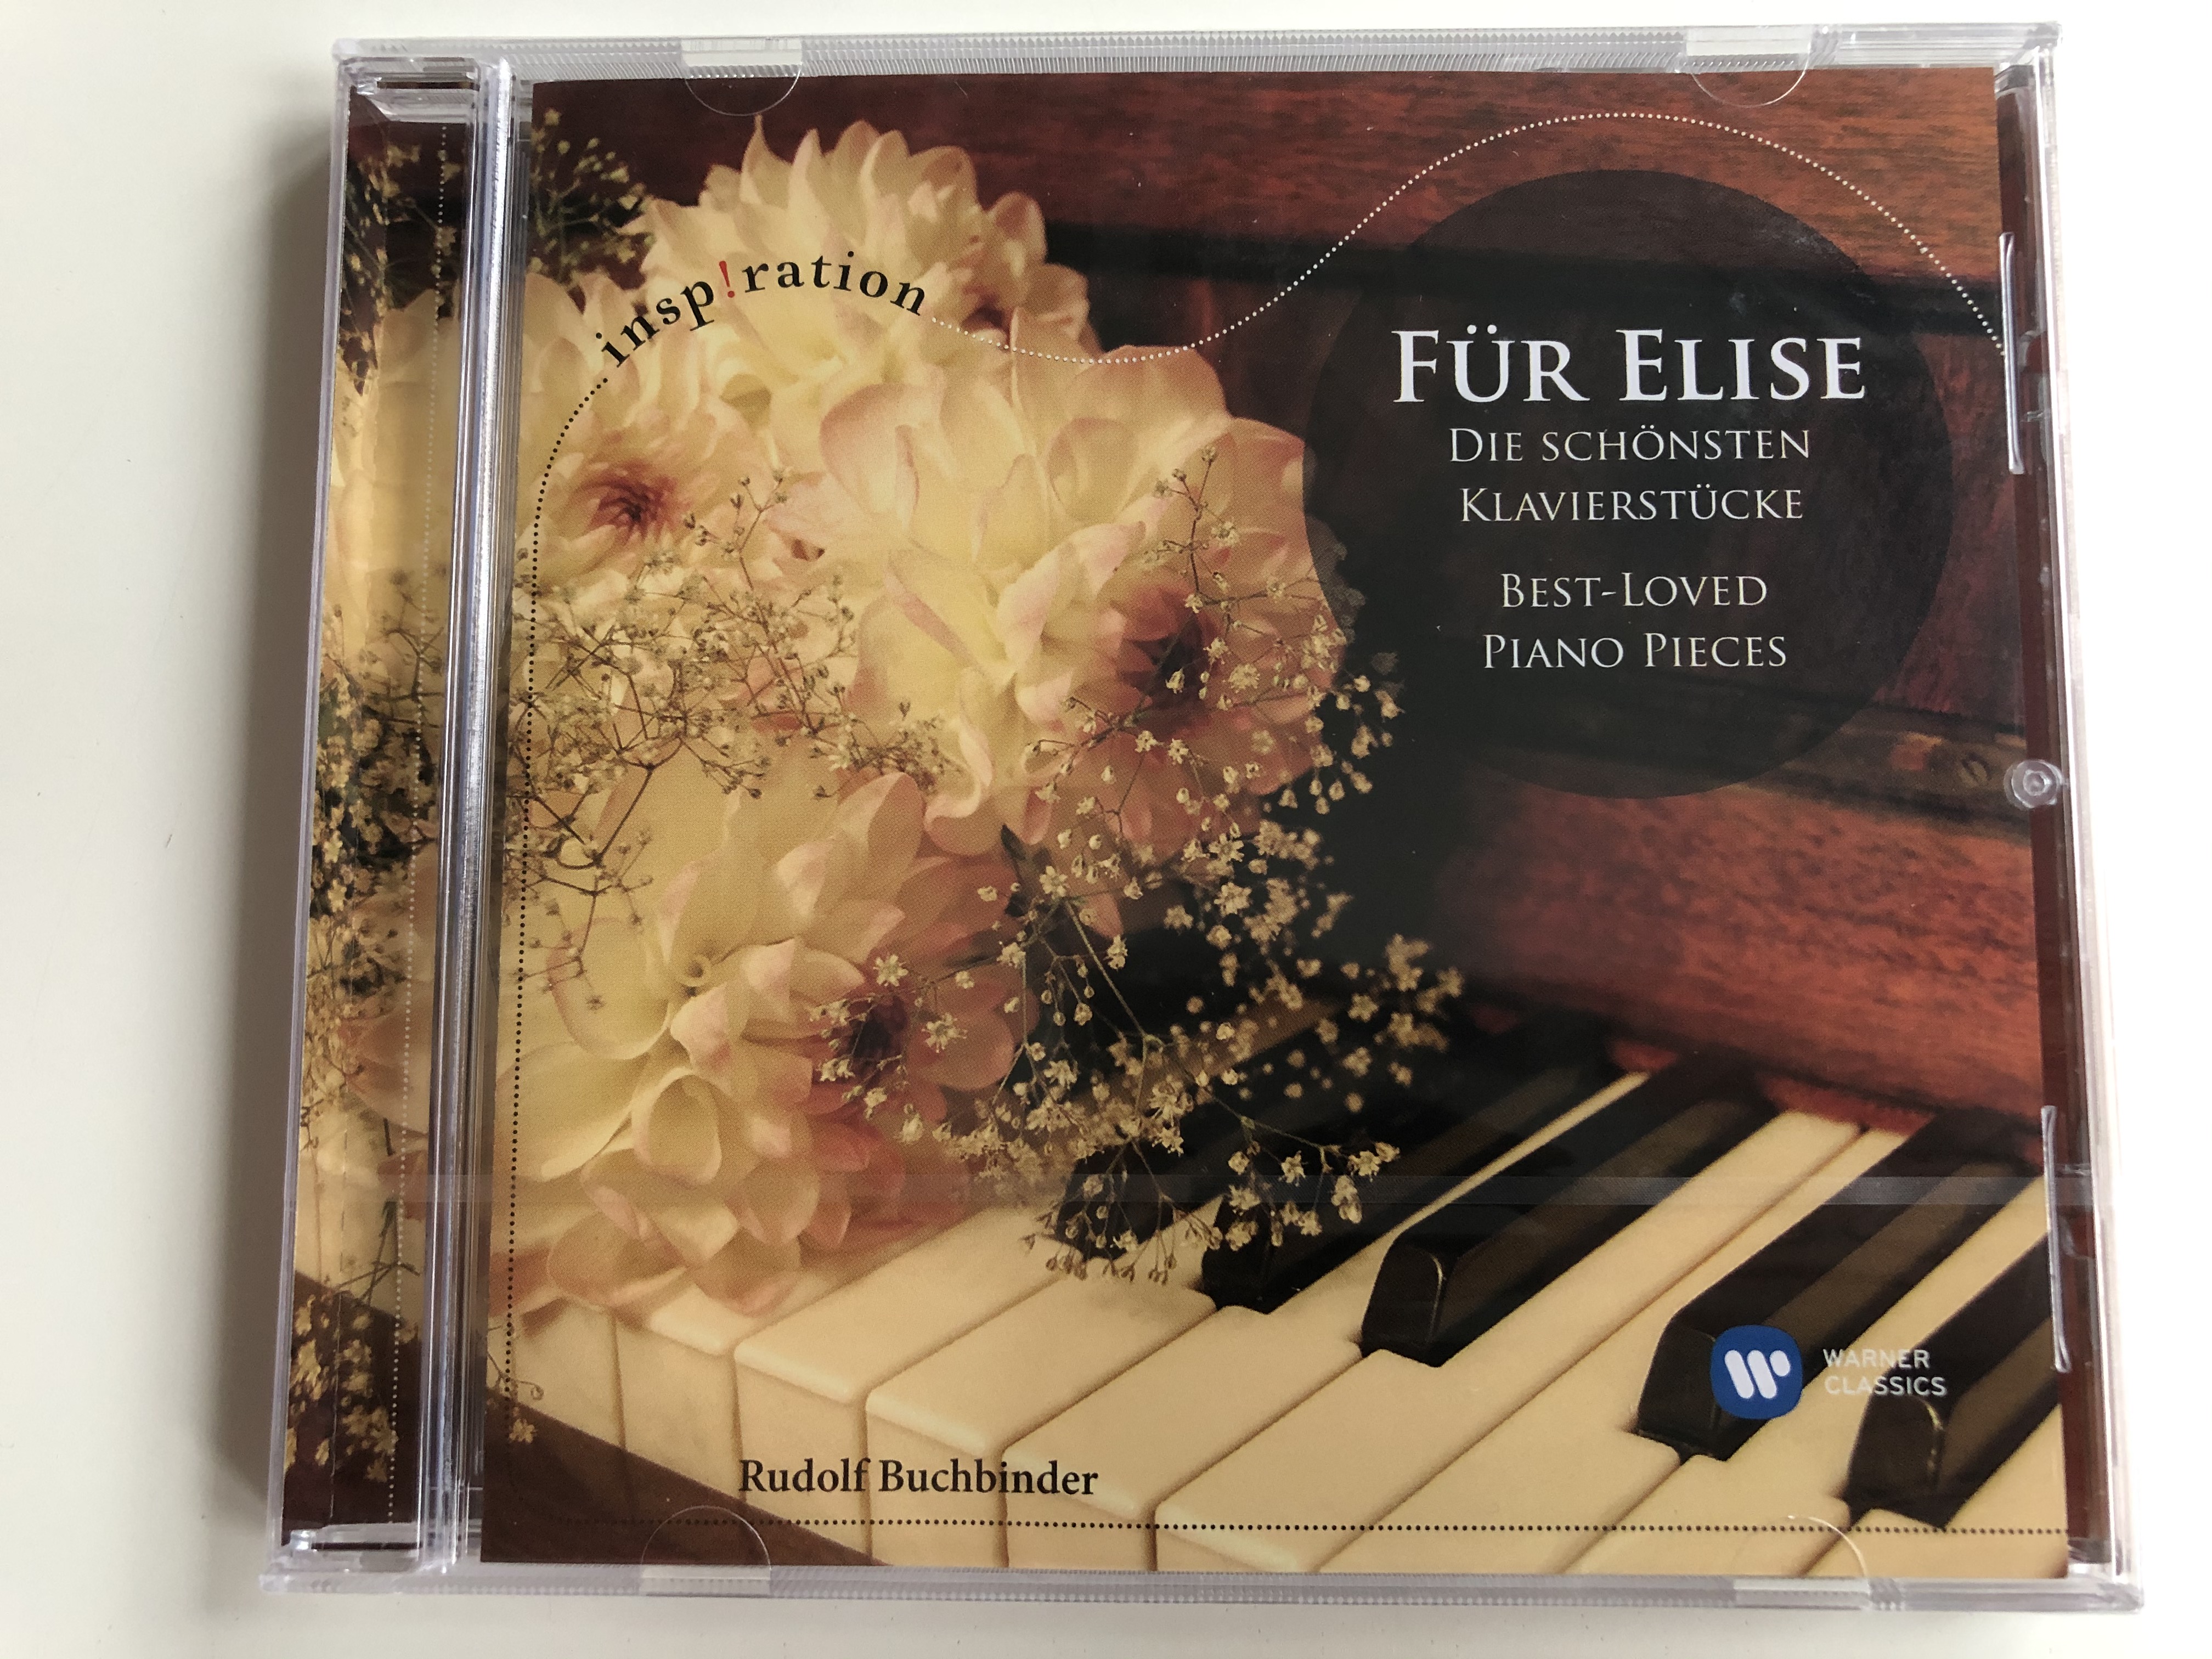 fur-elise-die-schonsten-klavierstucke-best-loved-piano-pieces-insp-ration-rudolf-buchbinder-warner-classics-audio-cd-2009-5099945745928-1-.jpg